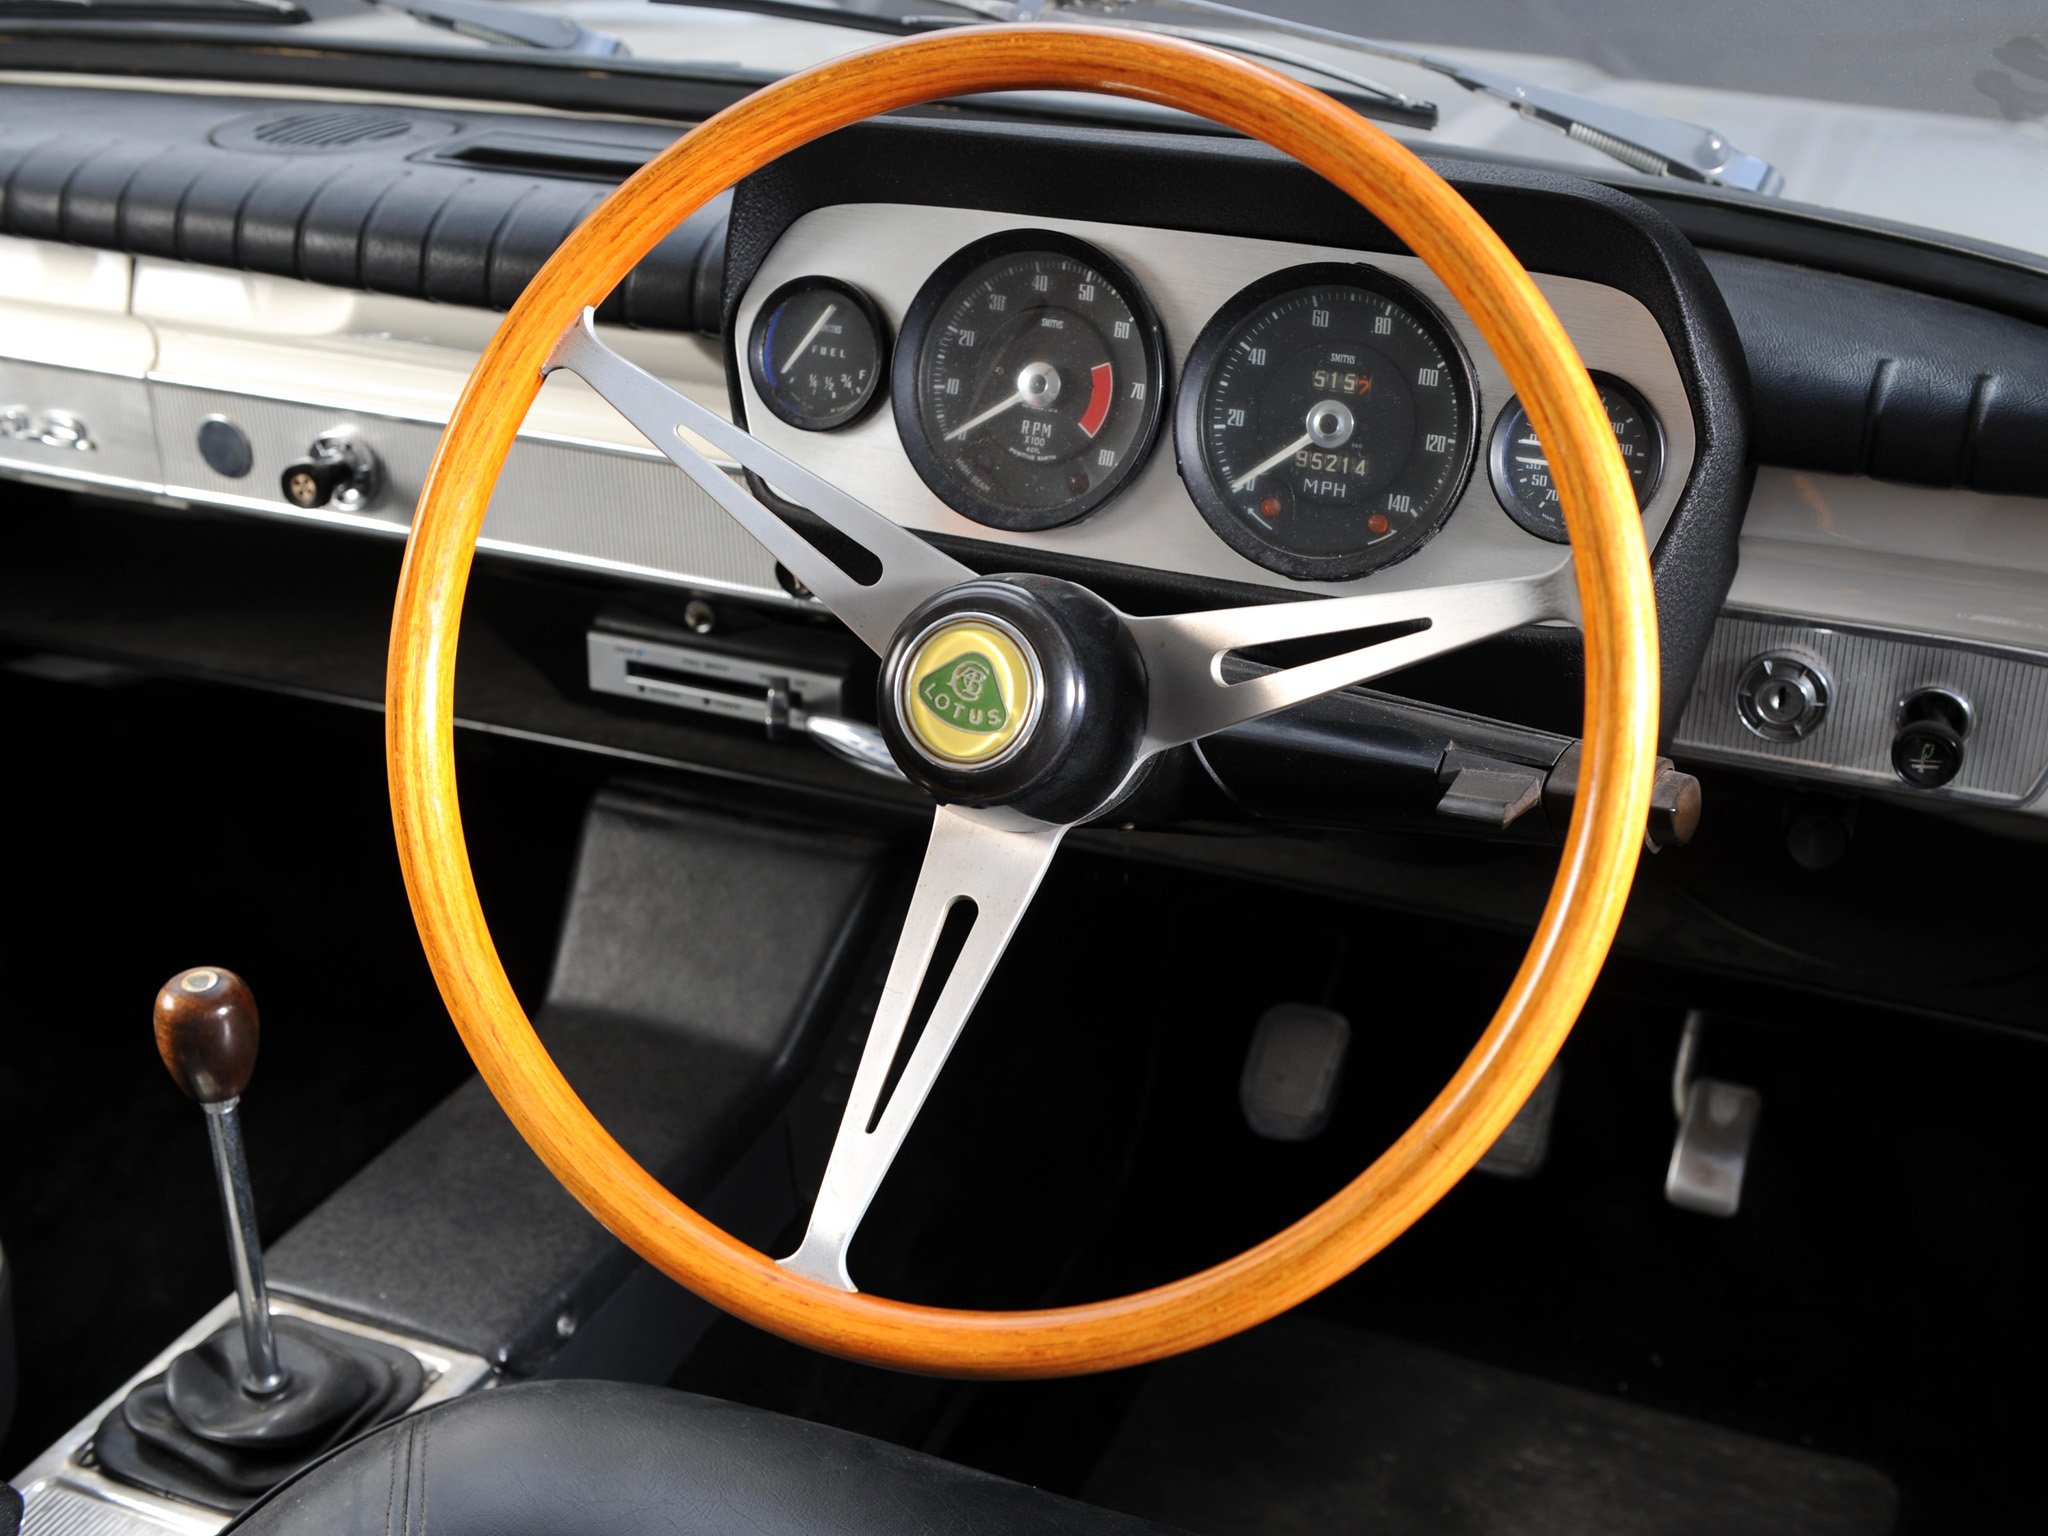 1963 66, Ford, Cortina, Lotus,  mki , Race, Racing, Classic, Lotus, Interior, Gg Wallpaper